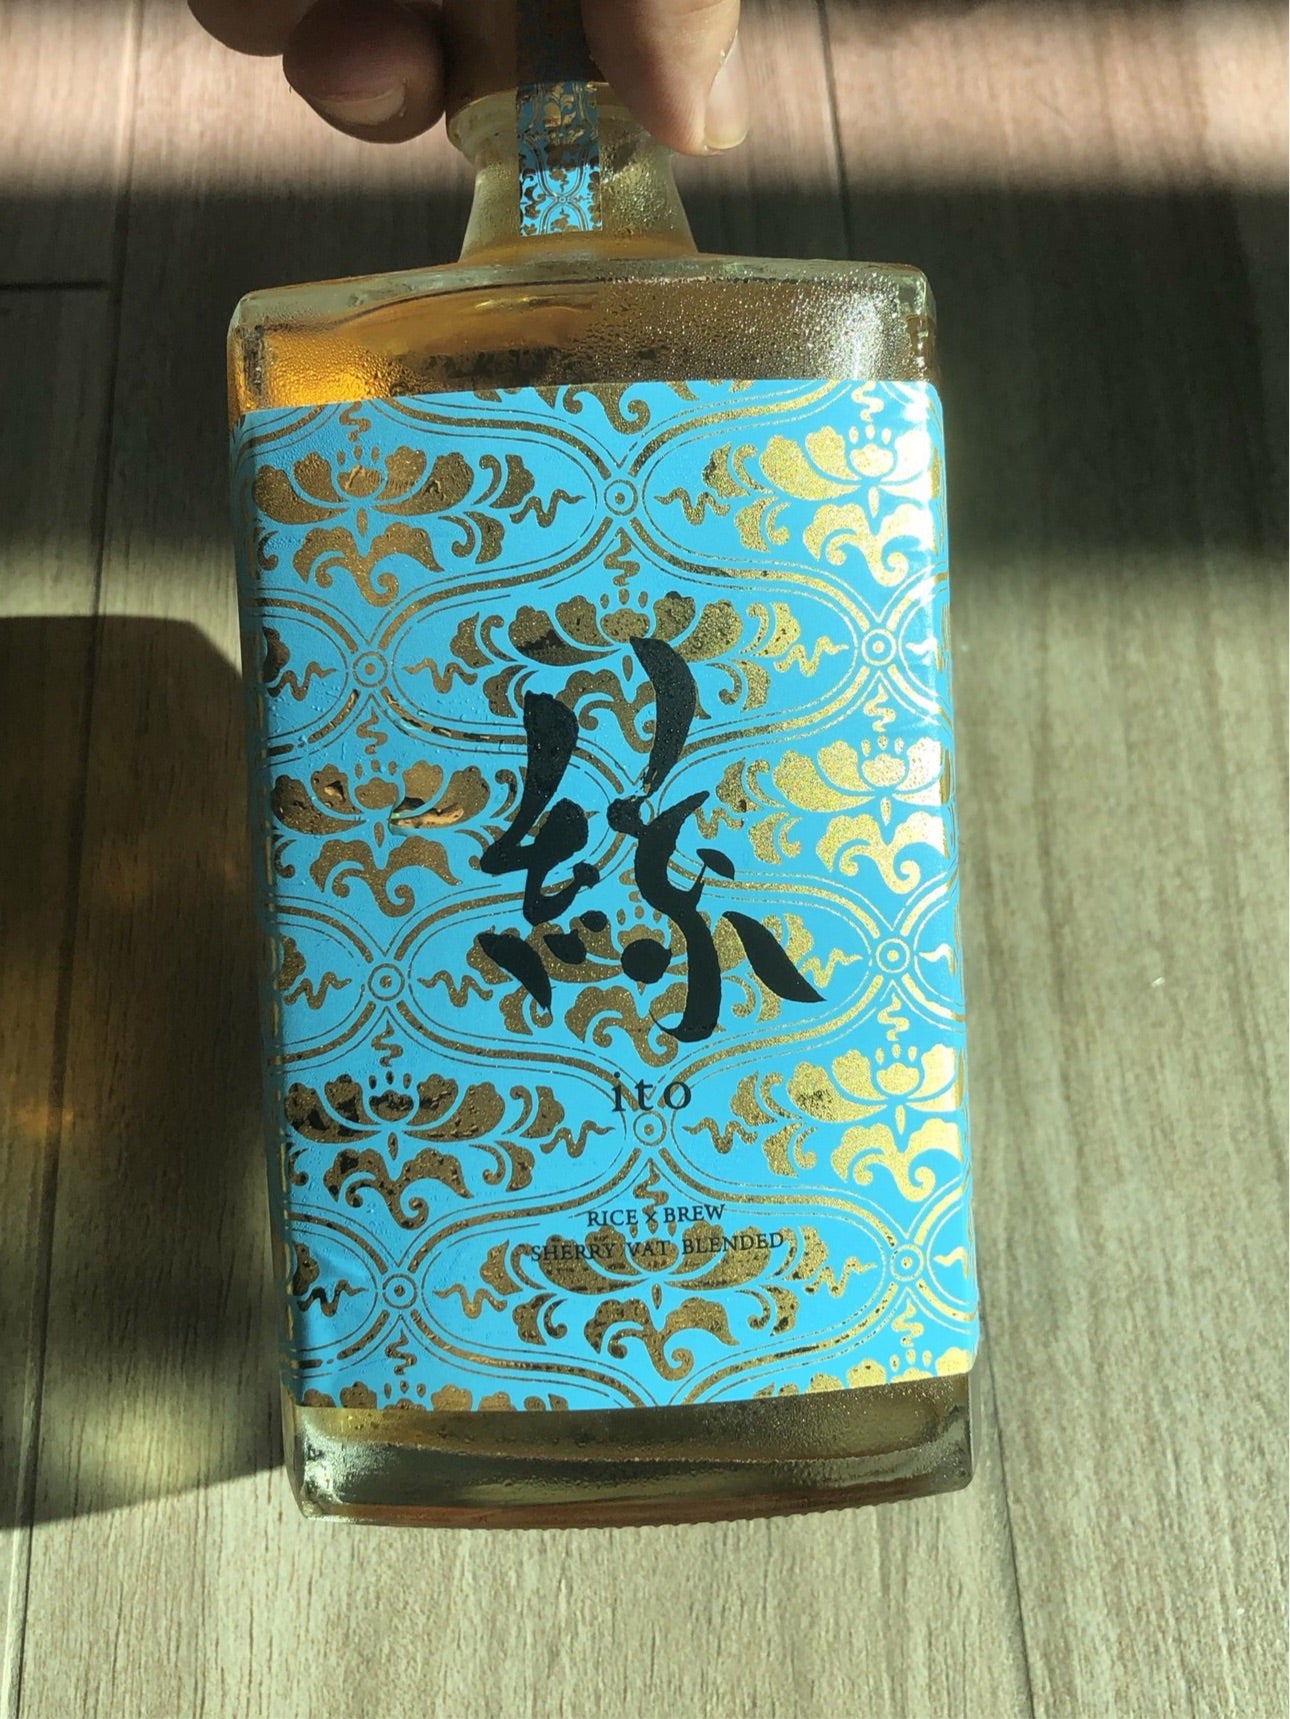 【絲】雪莉桶 SHERRY CASK 熟成 原酒 日本清酒 750ml